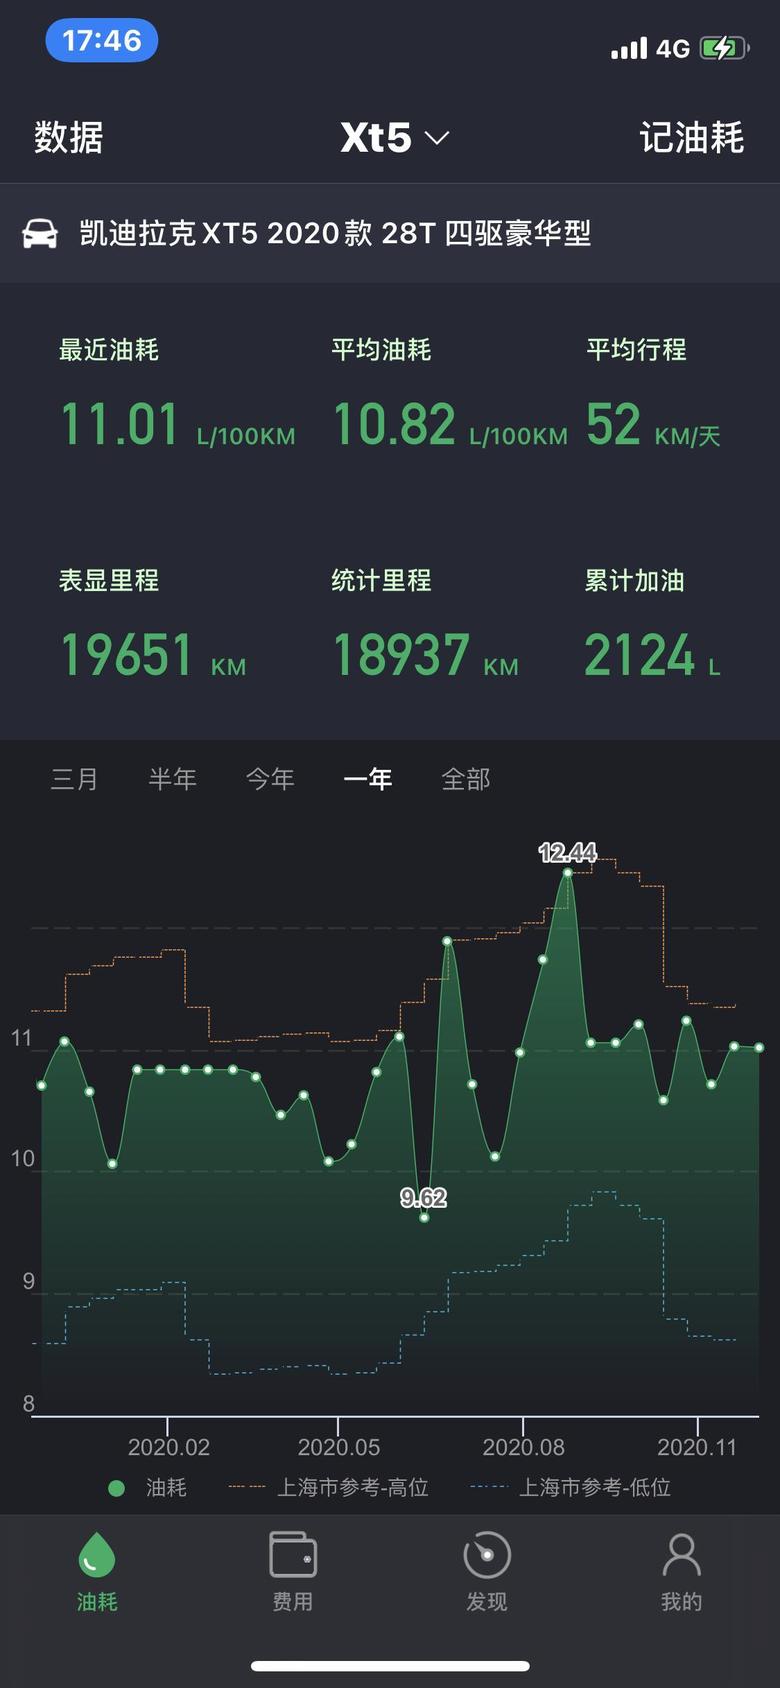 凯迪拉克xt5 分享一下油耗，上海市区上下班路况，高架+地面，拥堵路况。空调Auto，地面2驱+启停，高架4驱+非启停。